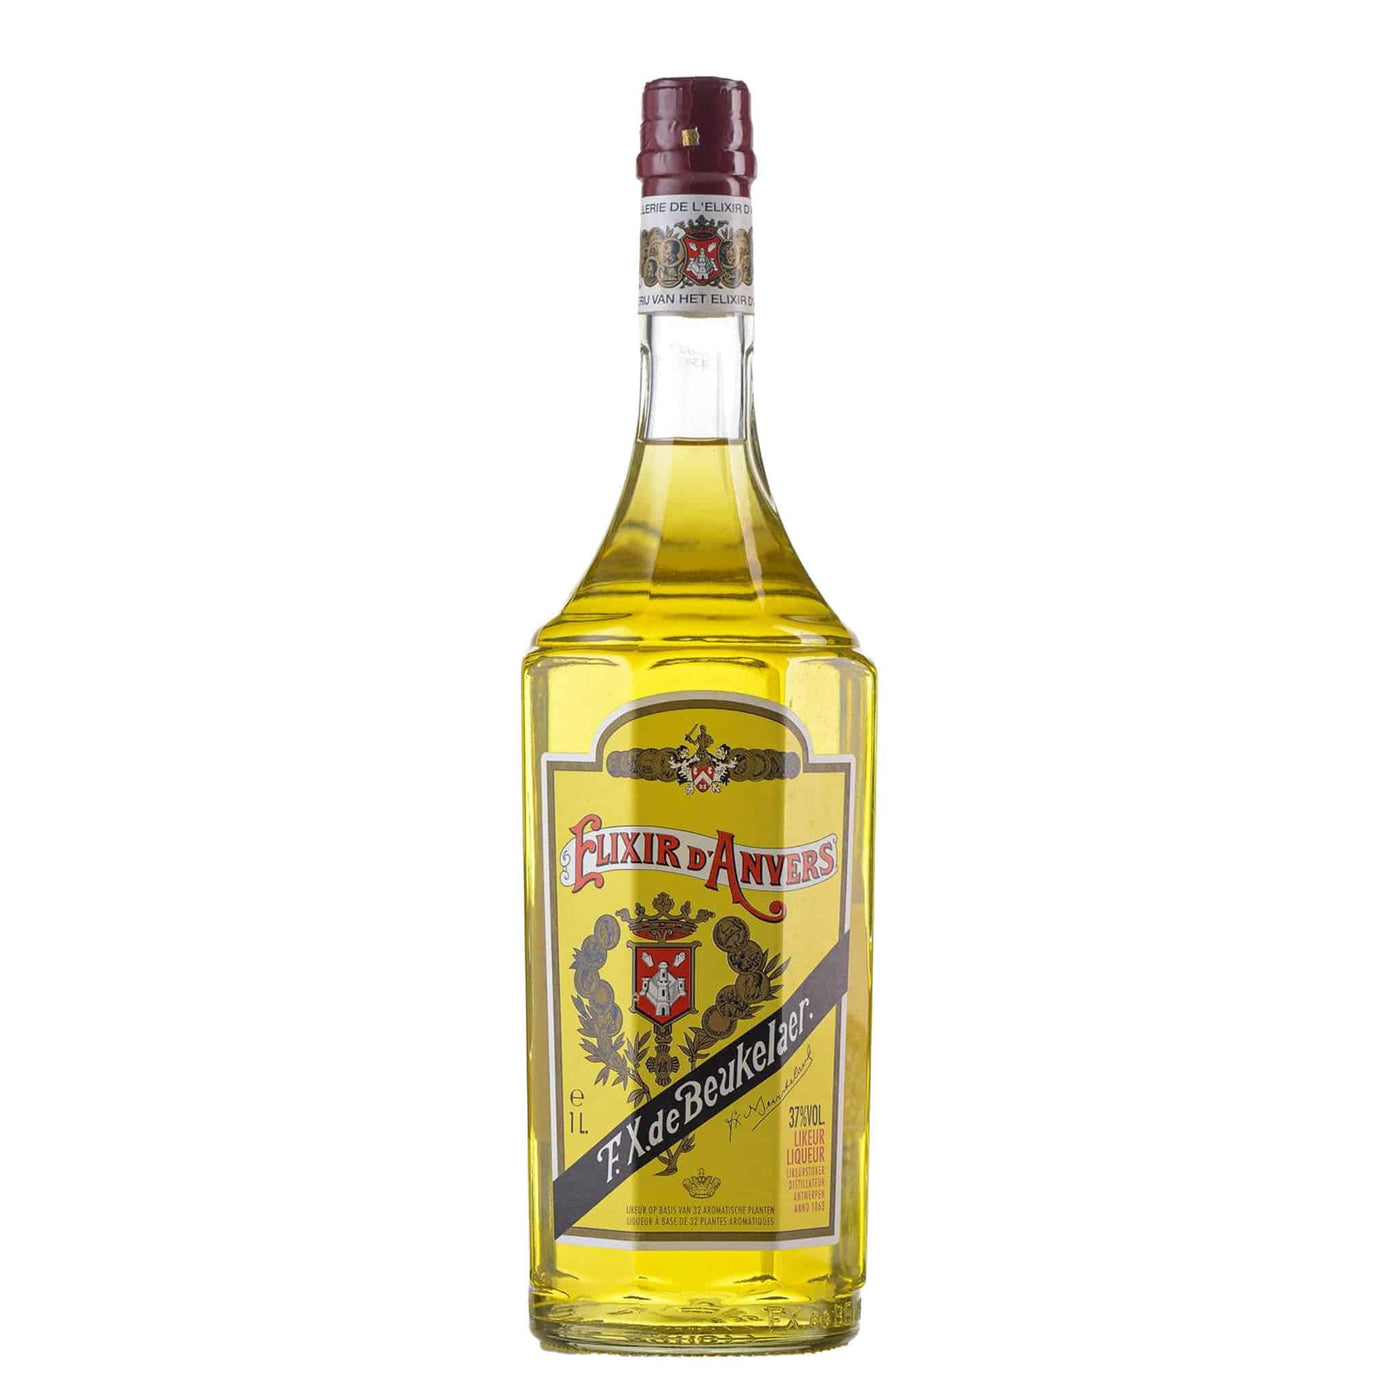 Elixir D'Anvers - Spiritly